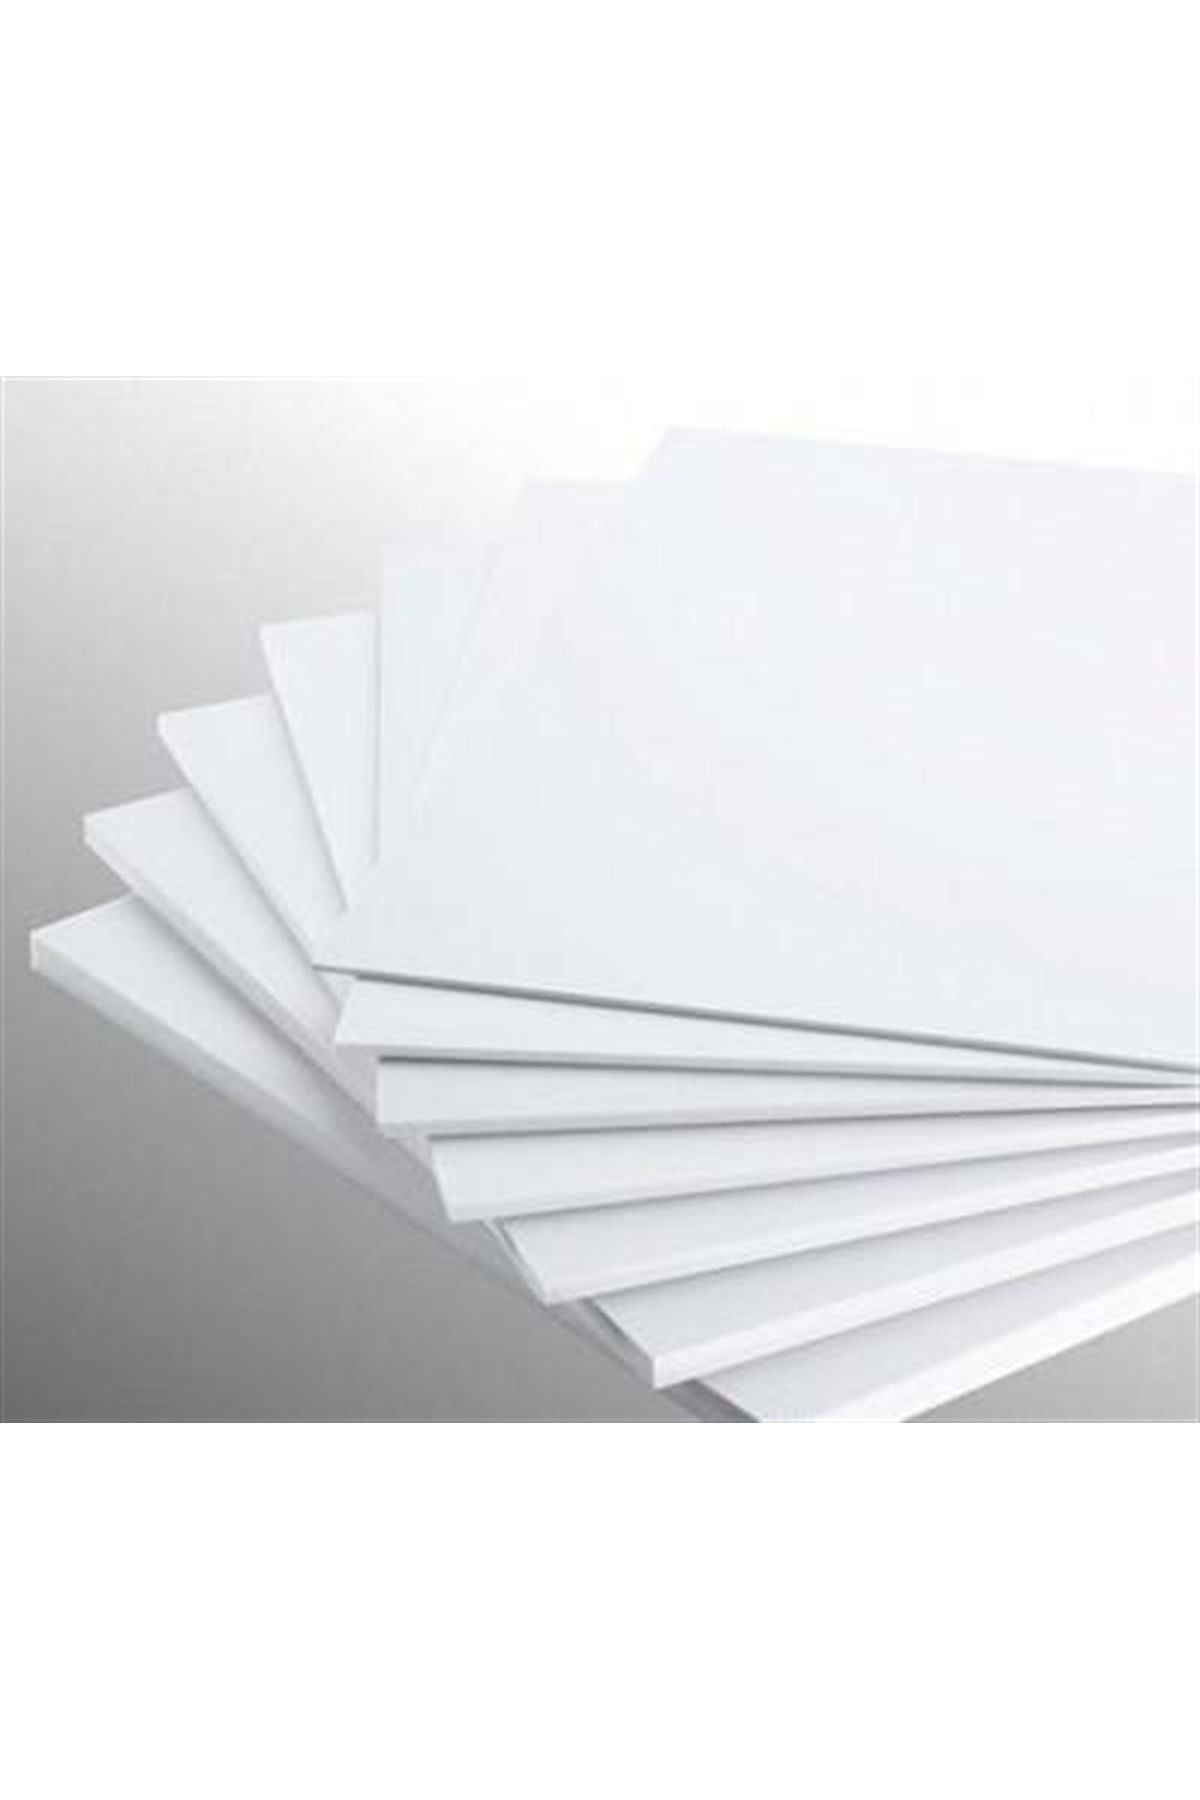 Masis Art Tuval Maket Kartonu,beyaz,70x100 Cm,1 Mm,10 Ad.lik Paket